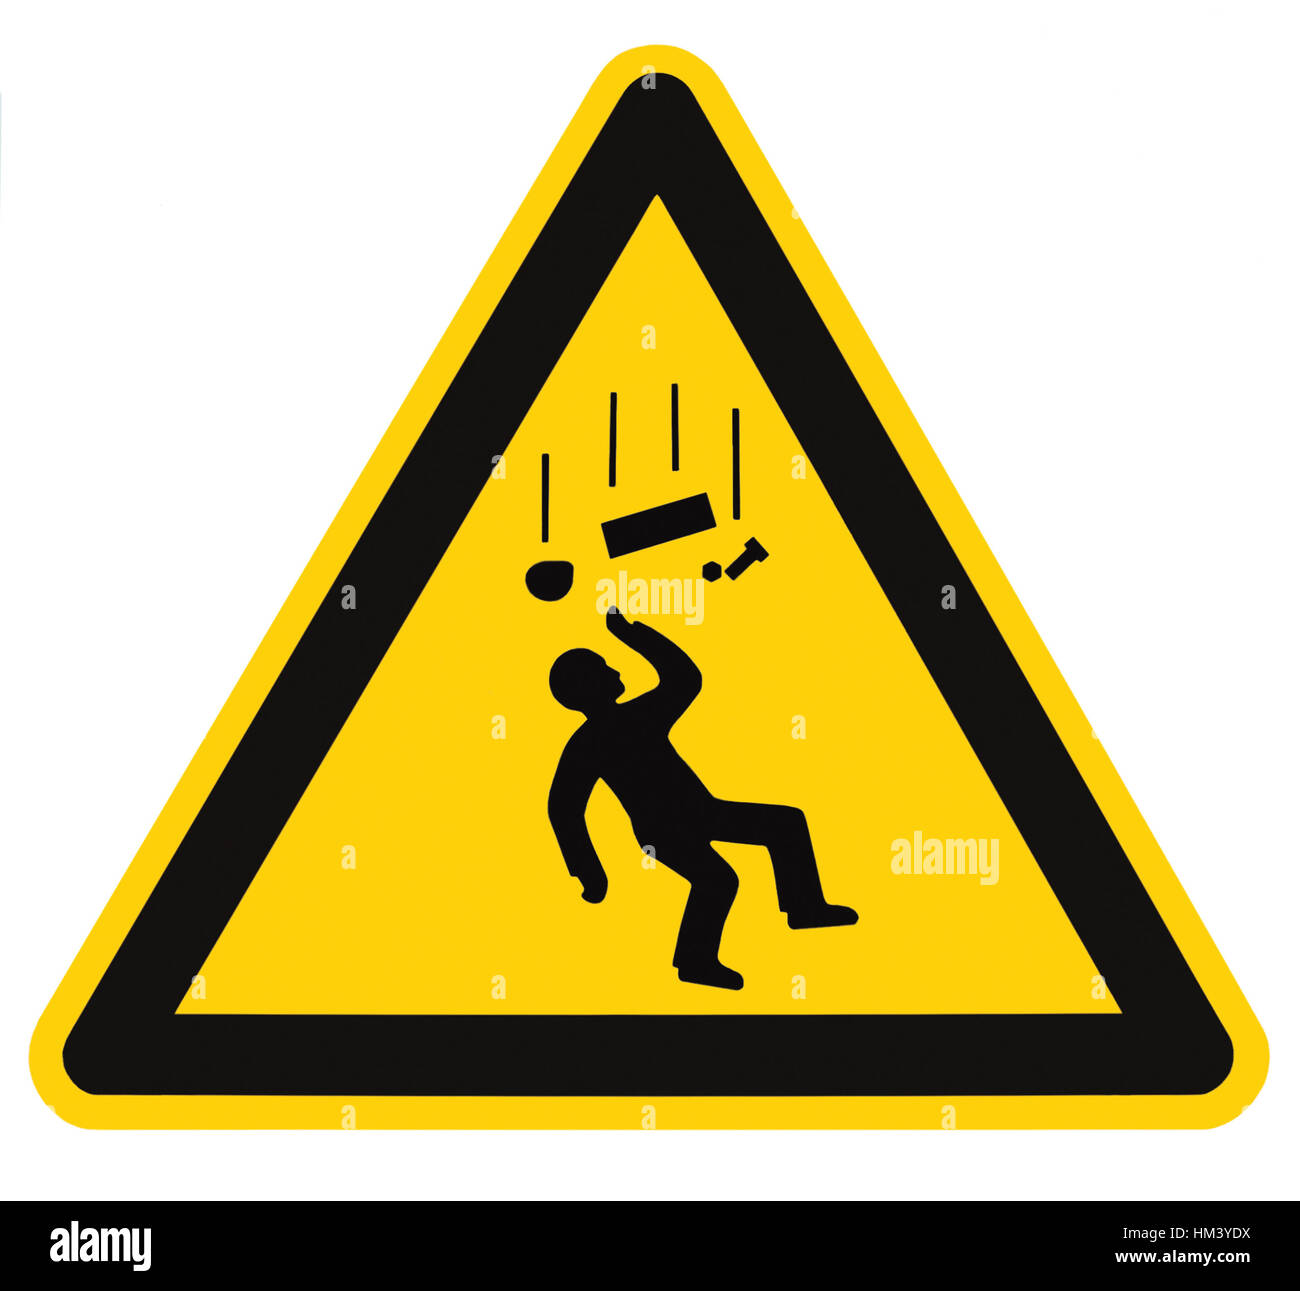 Panneau d'avertissement Danger, chute d'objets isolés, label triangle noir sur jaune, grand macro closeup Banque D'Images